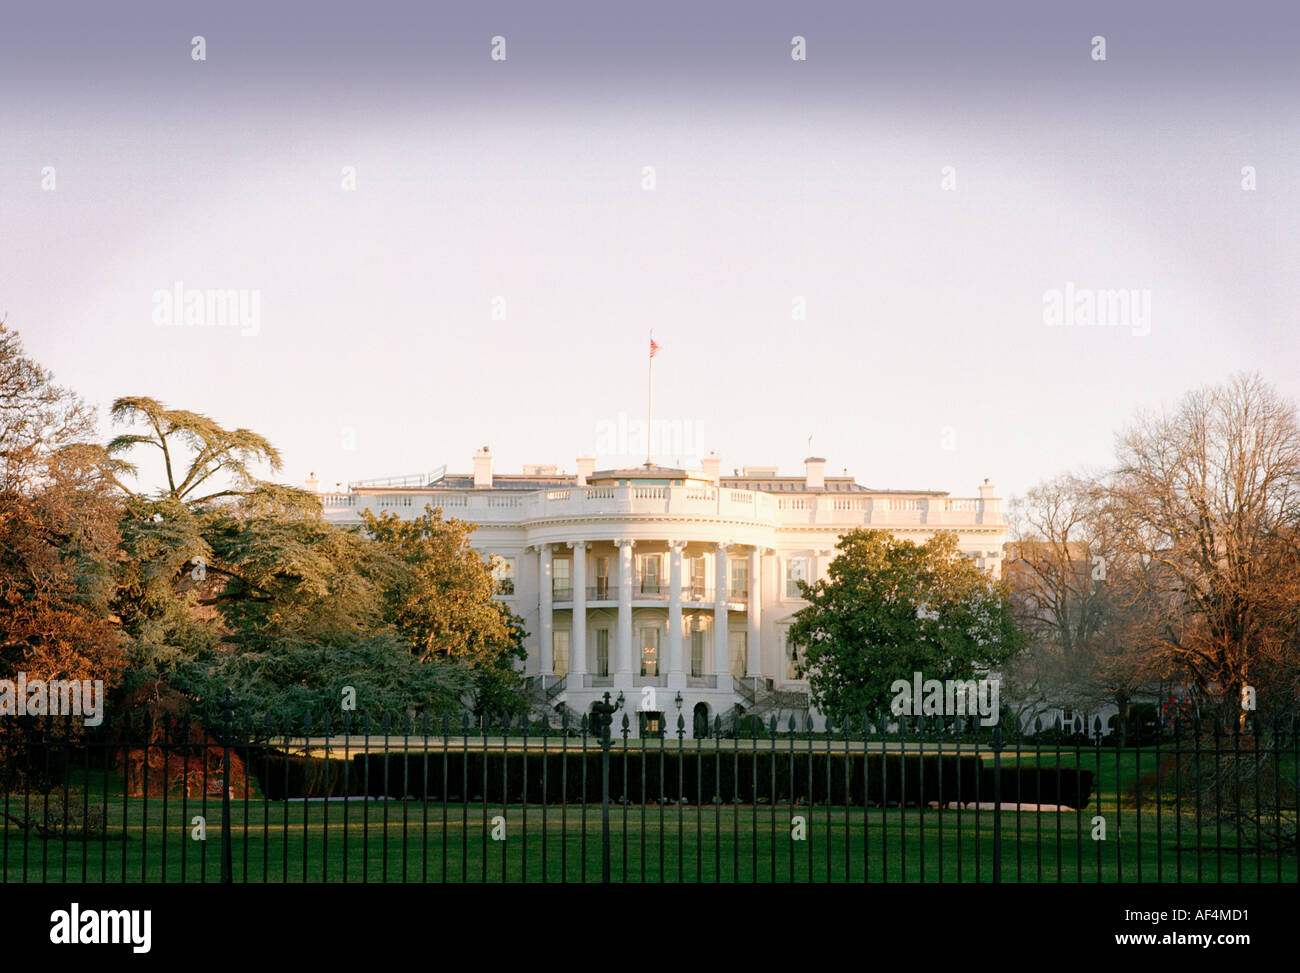 The White House Washington DC at dawn Stock Photo - Alamy